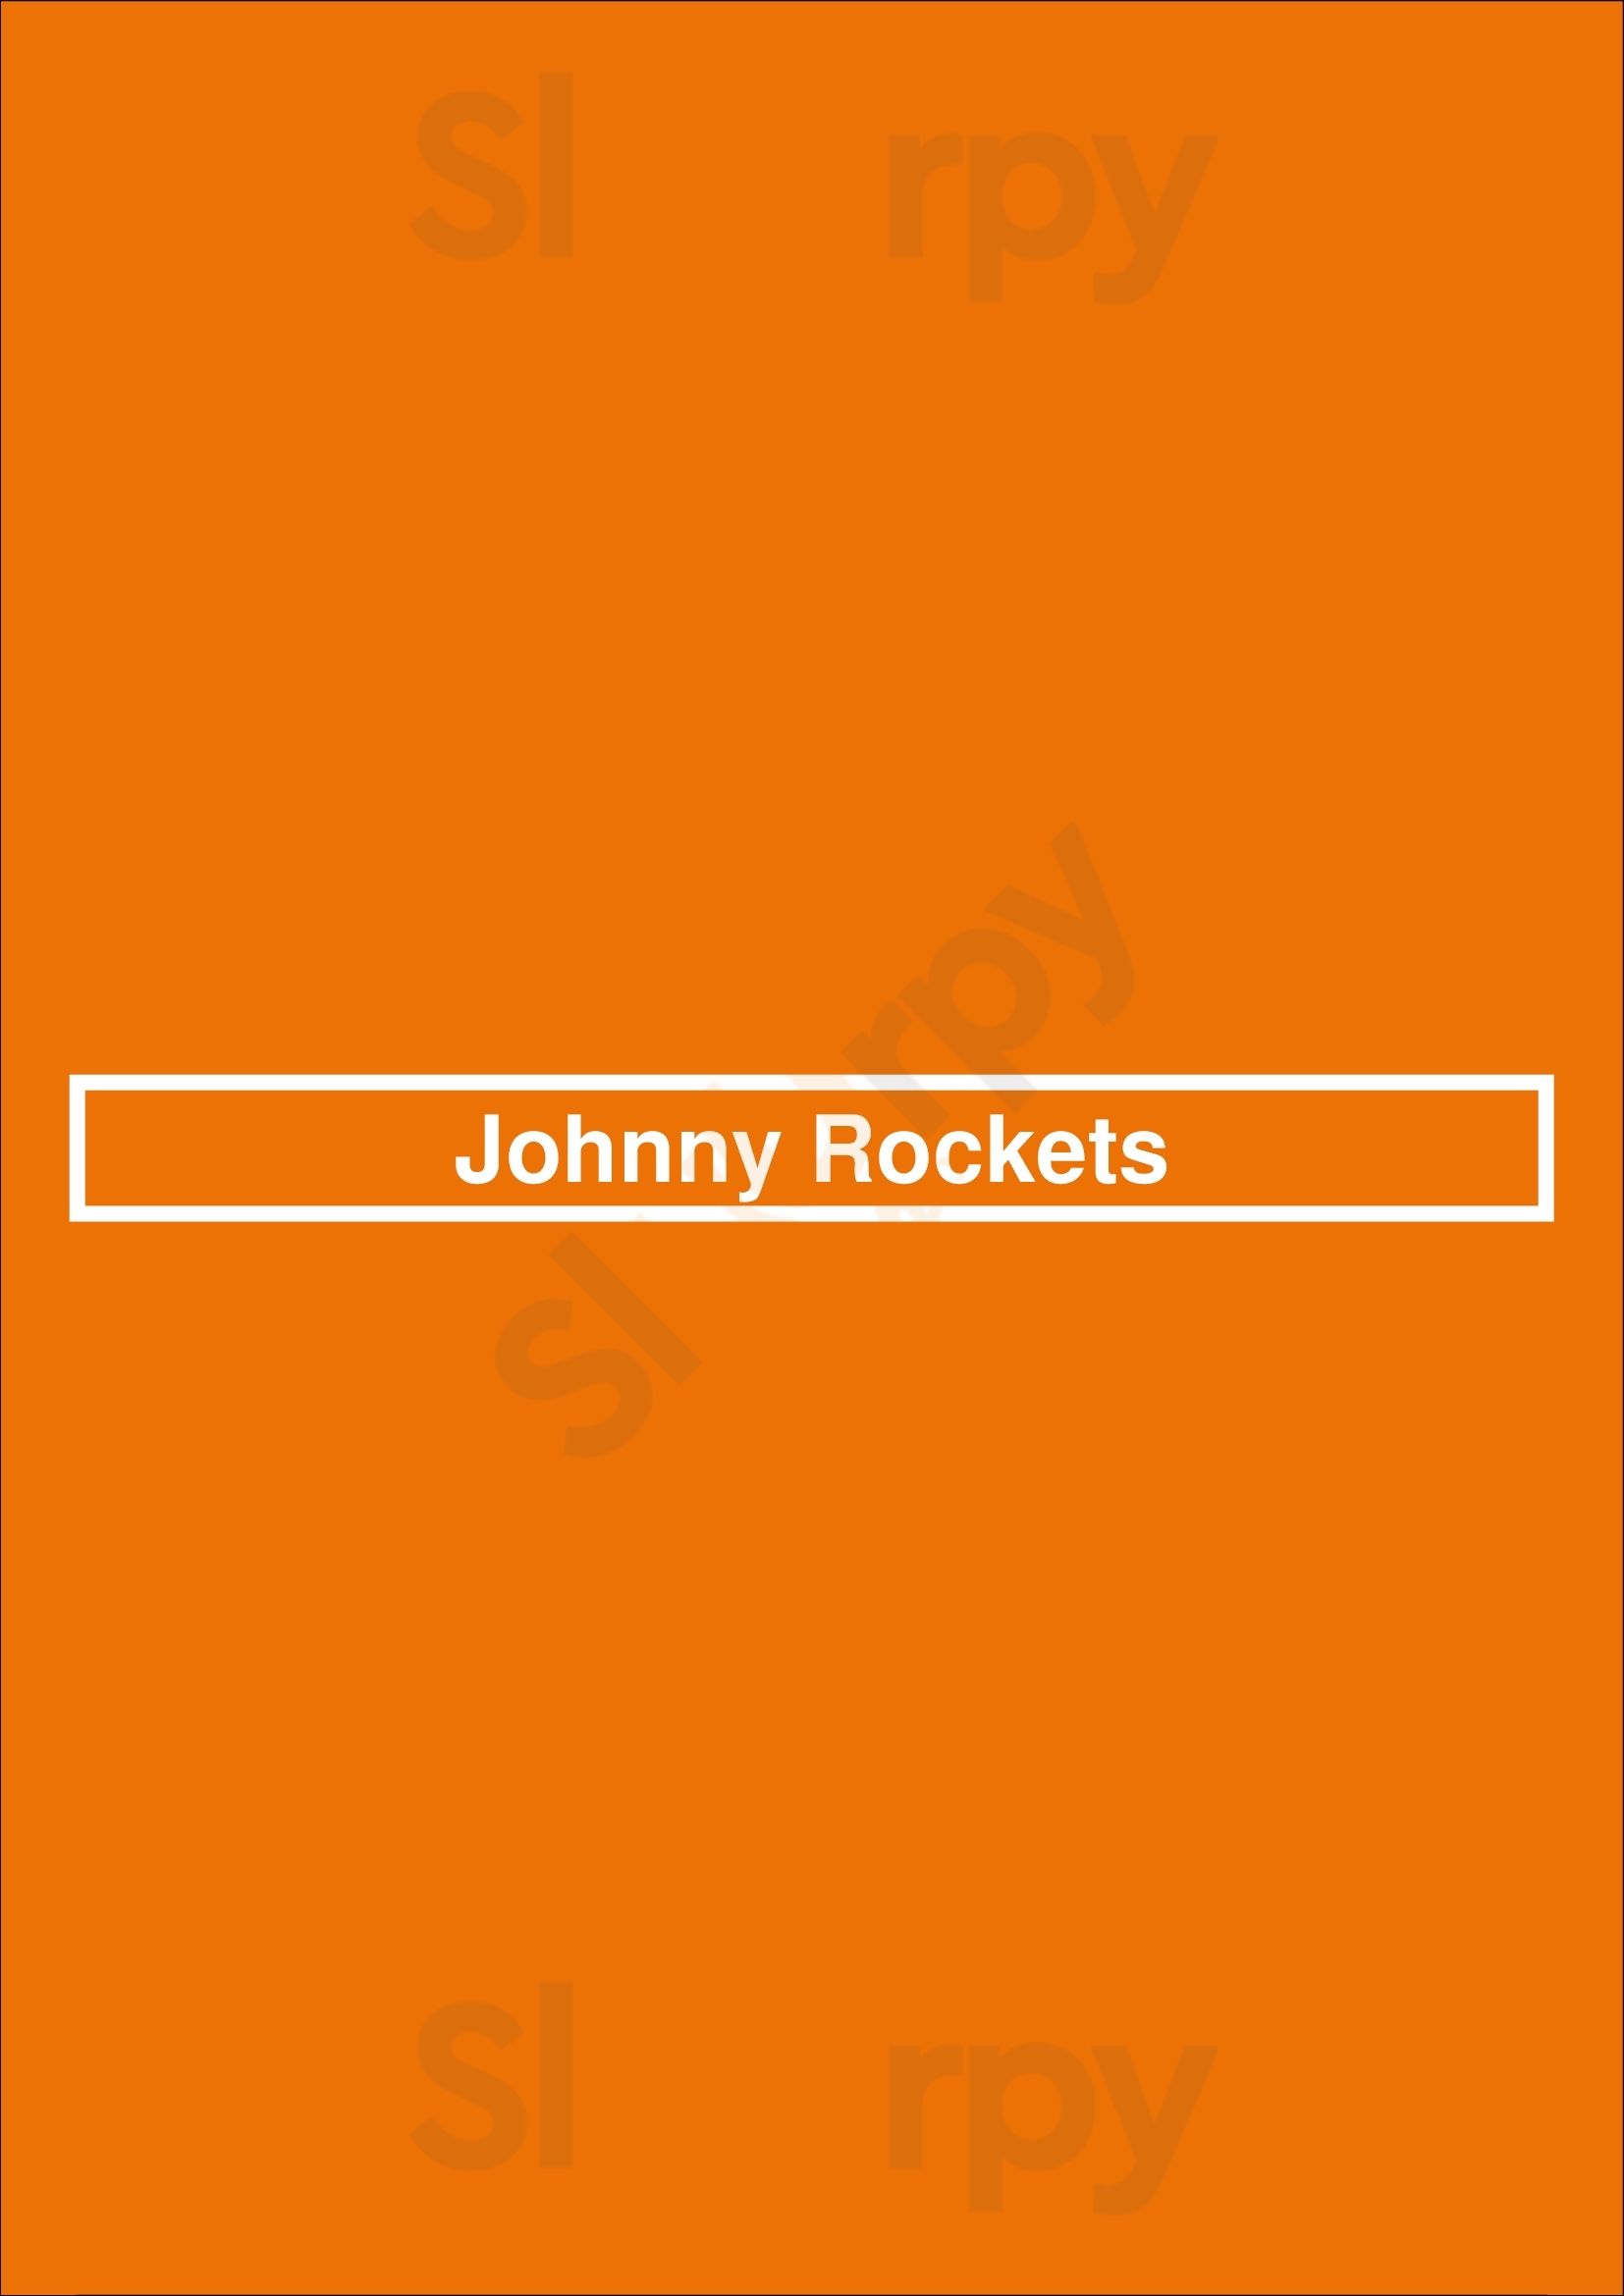 Johnny Rockets Vancouver Island Menu - 1